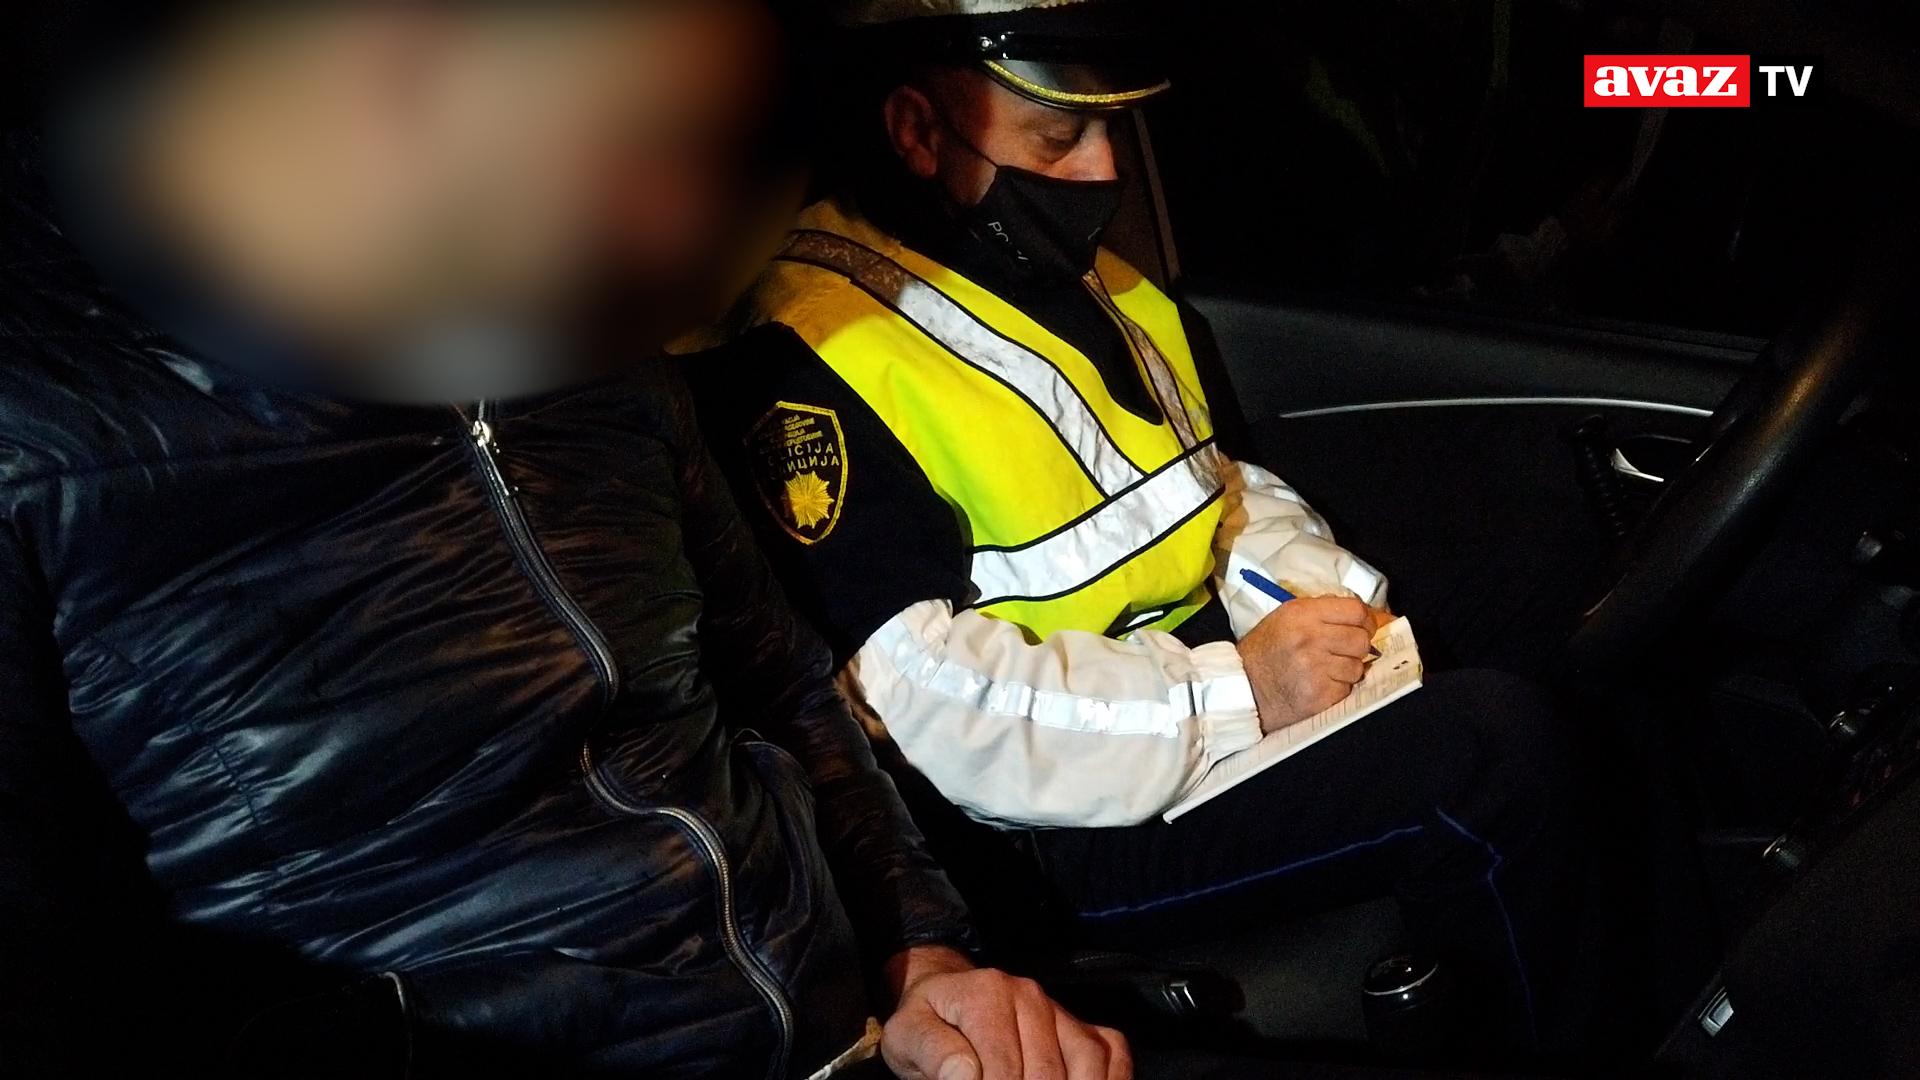 Avazova patrola / Pijani vozač 12 puta puhao u alkotest: "Ma, ne znam, je****!